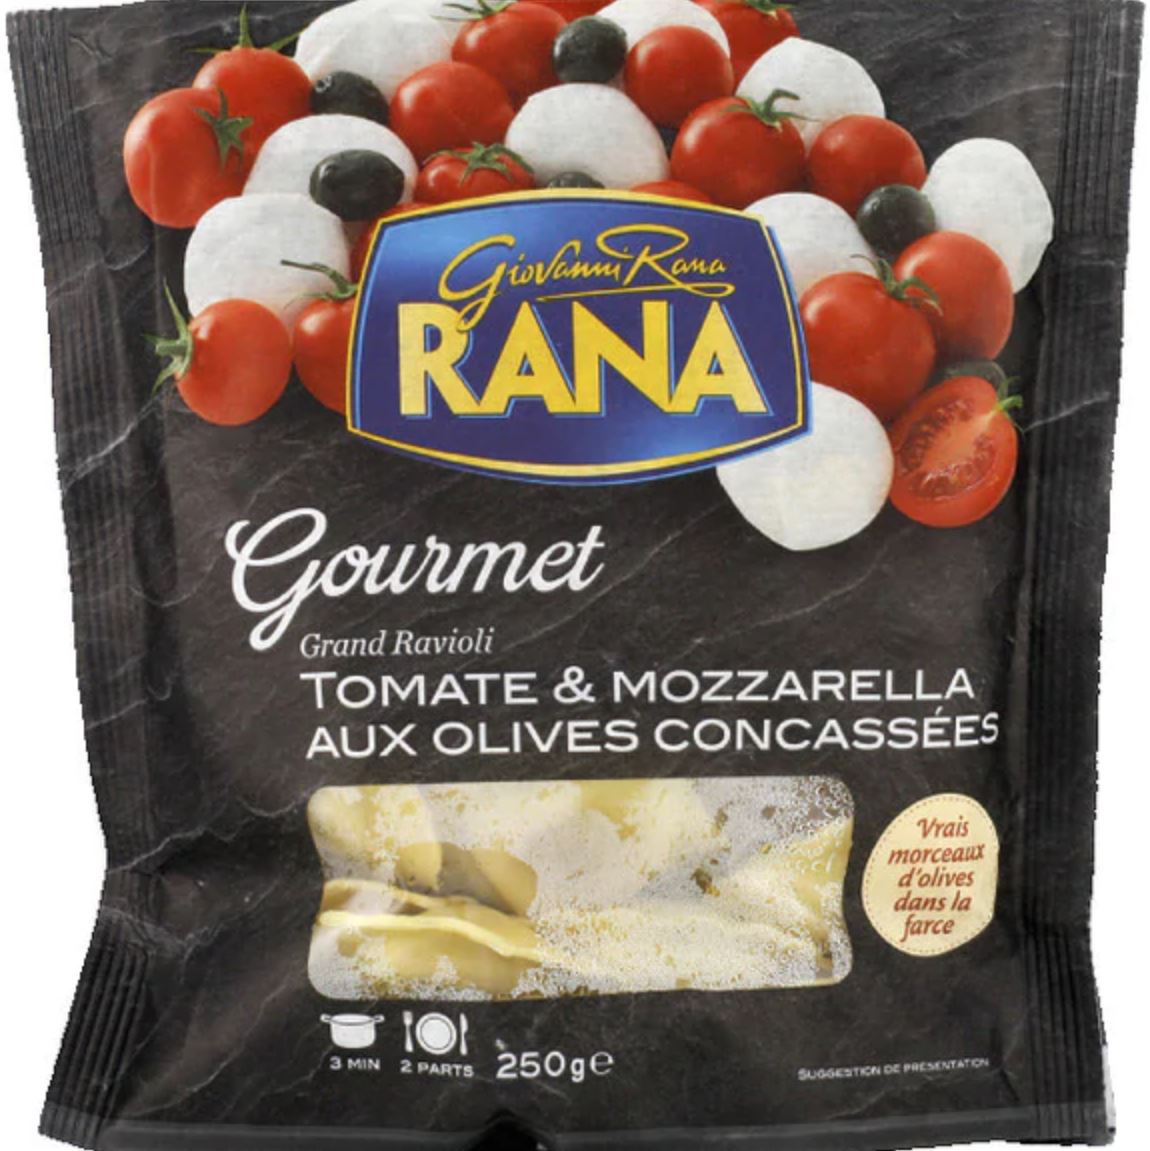 Grand Ravioli Tomate & Mozzarella